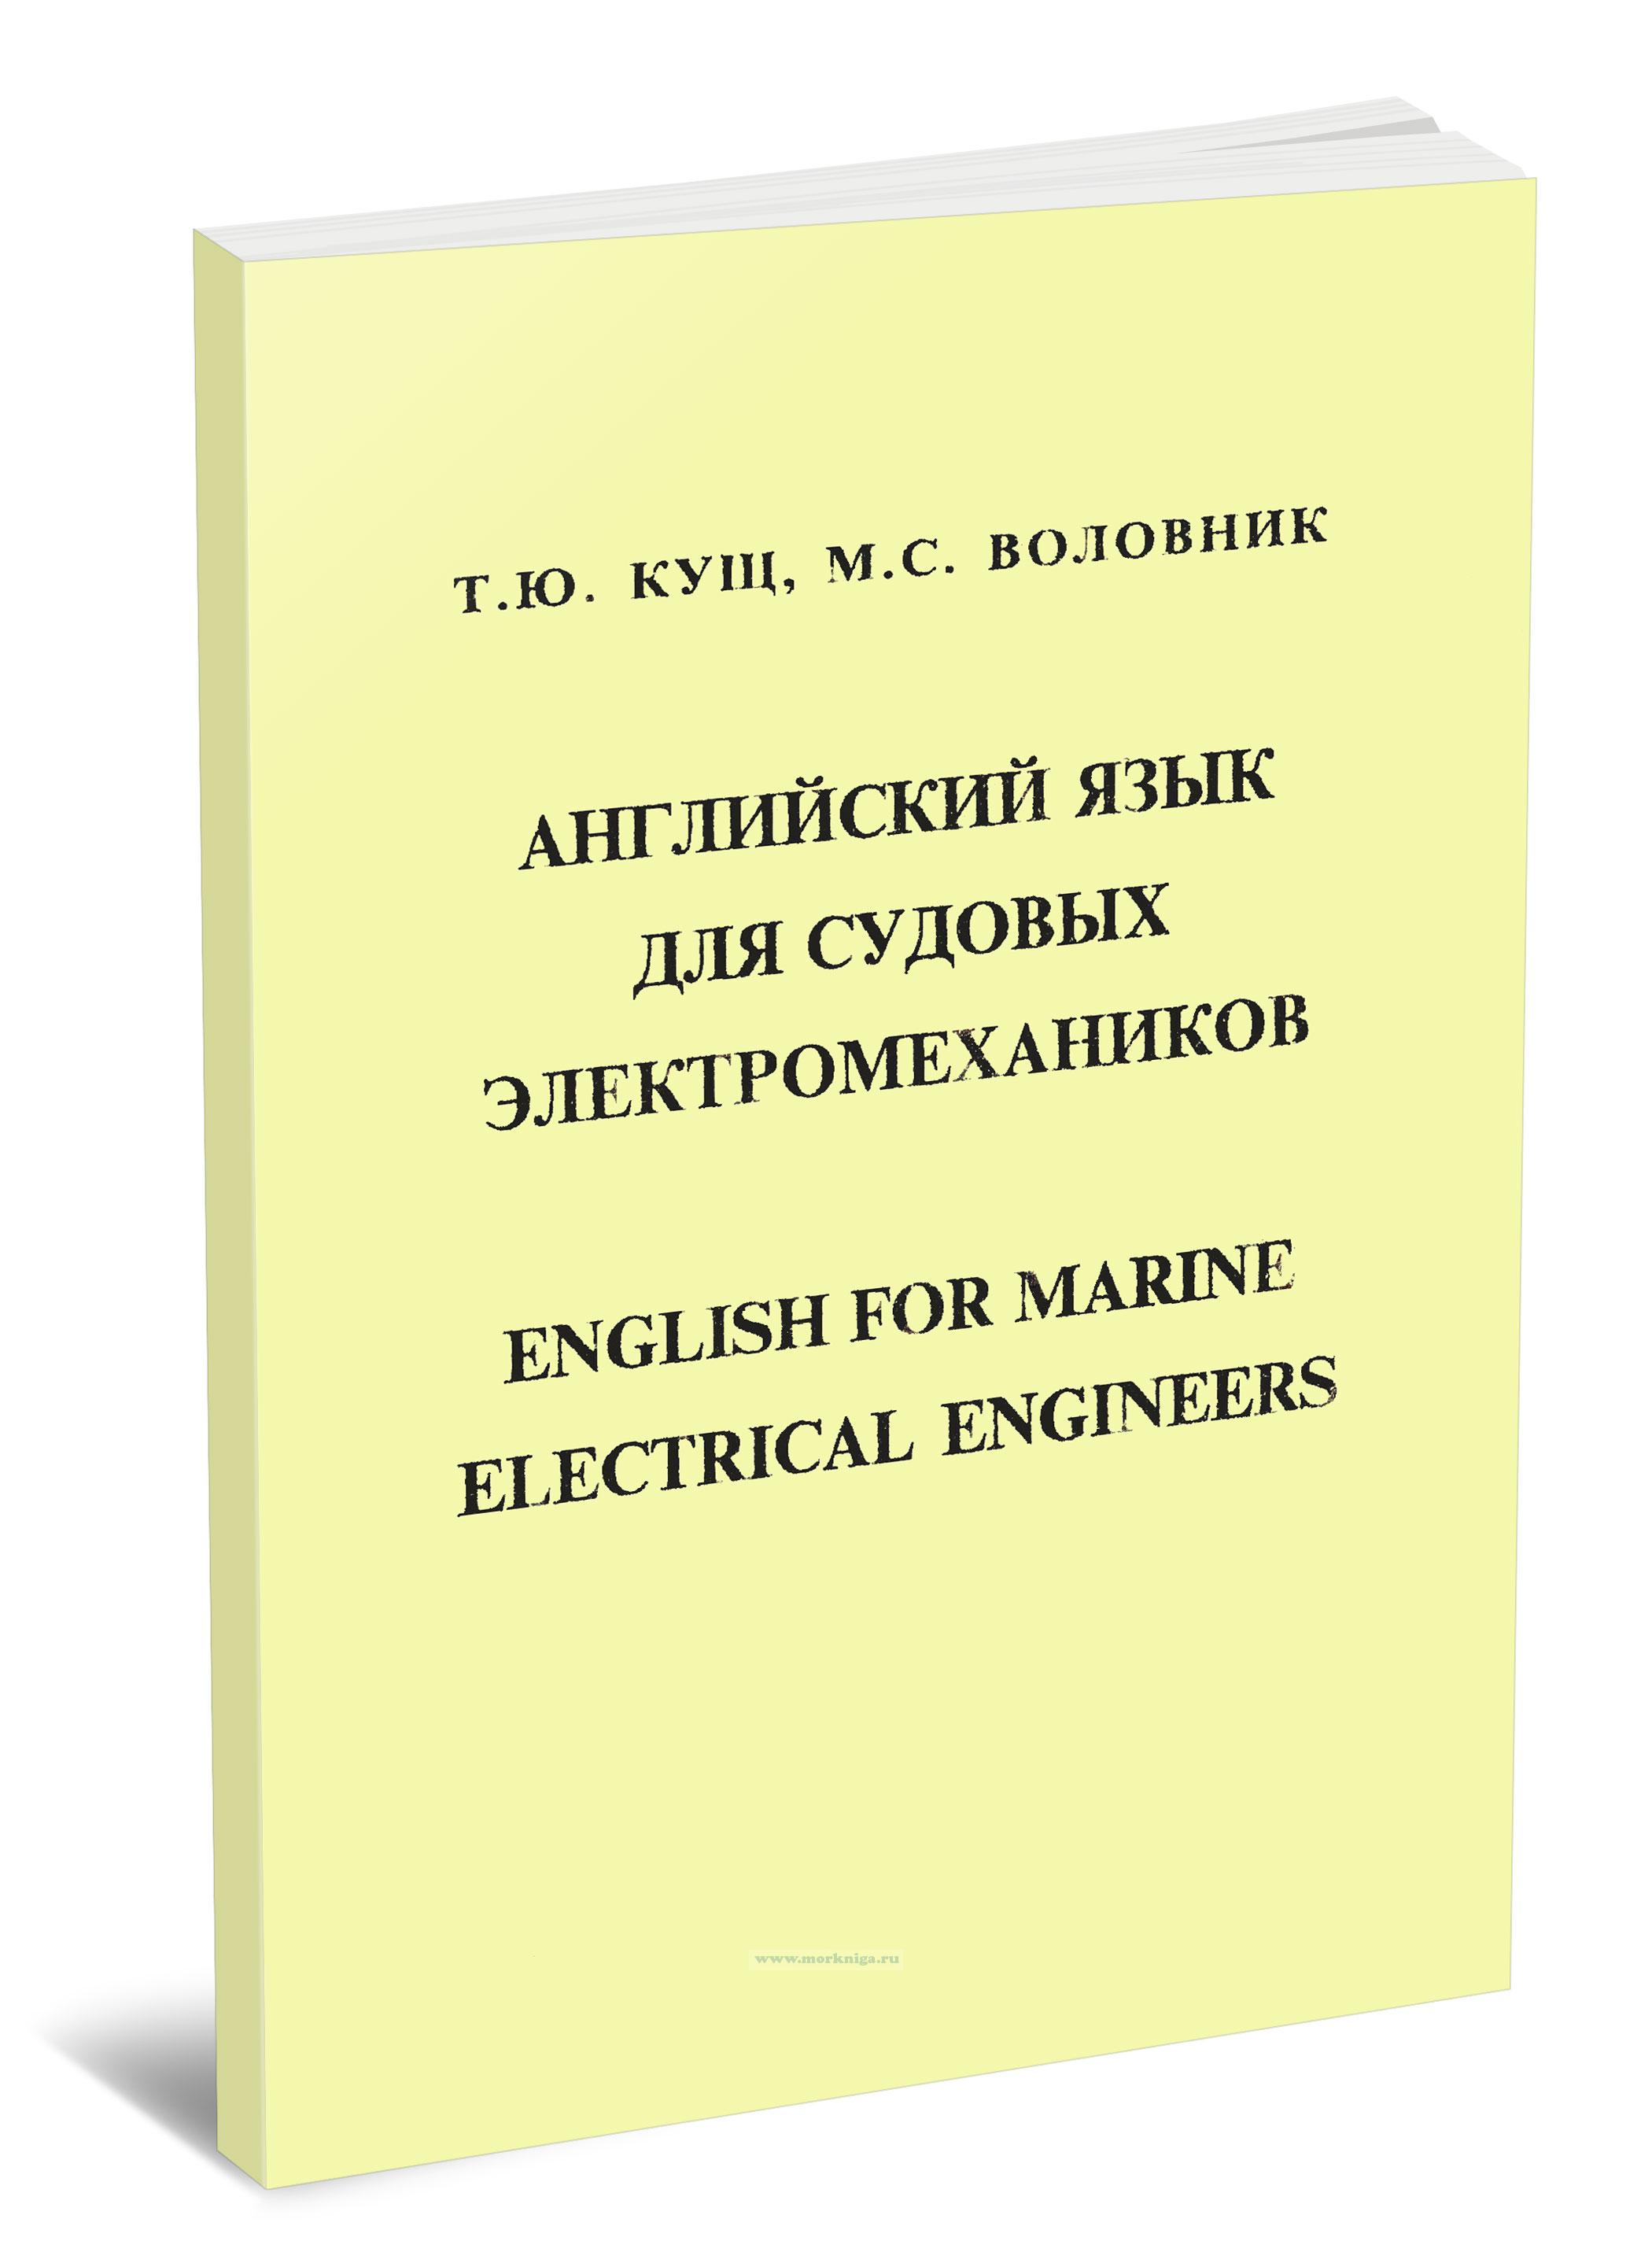 Английский язык для судовых электромехаников/English for marine electrical engineers